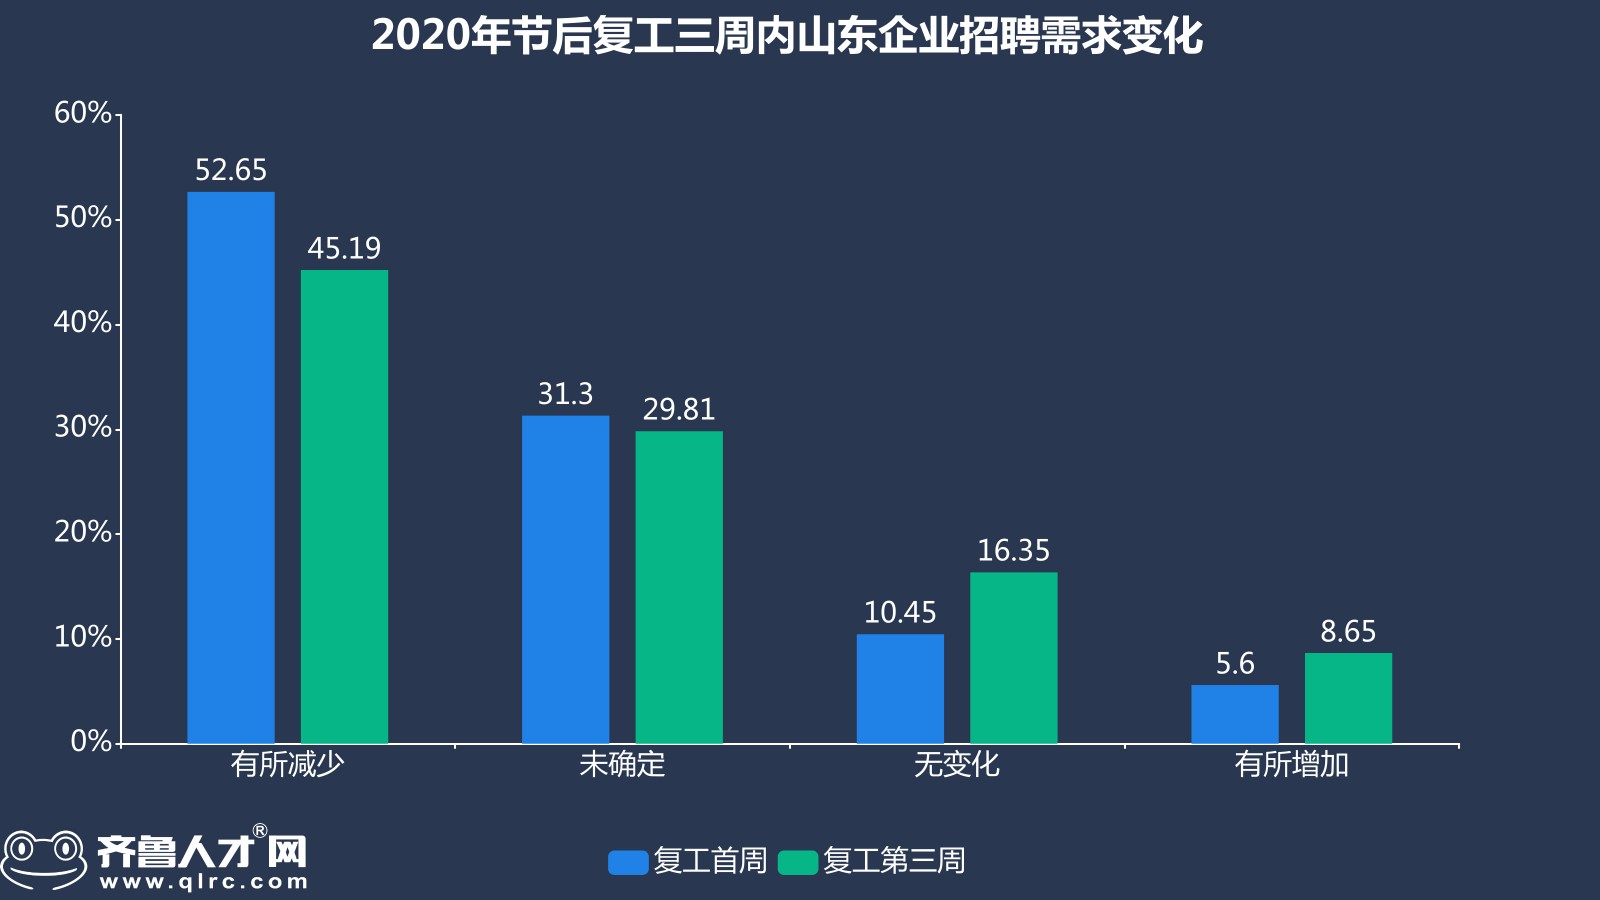 齊魯人才網-2020節后復工第三周山東就業市場數據圖1.jpg